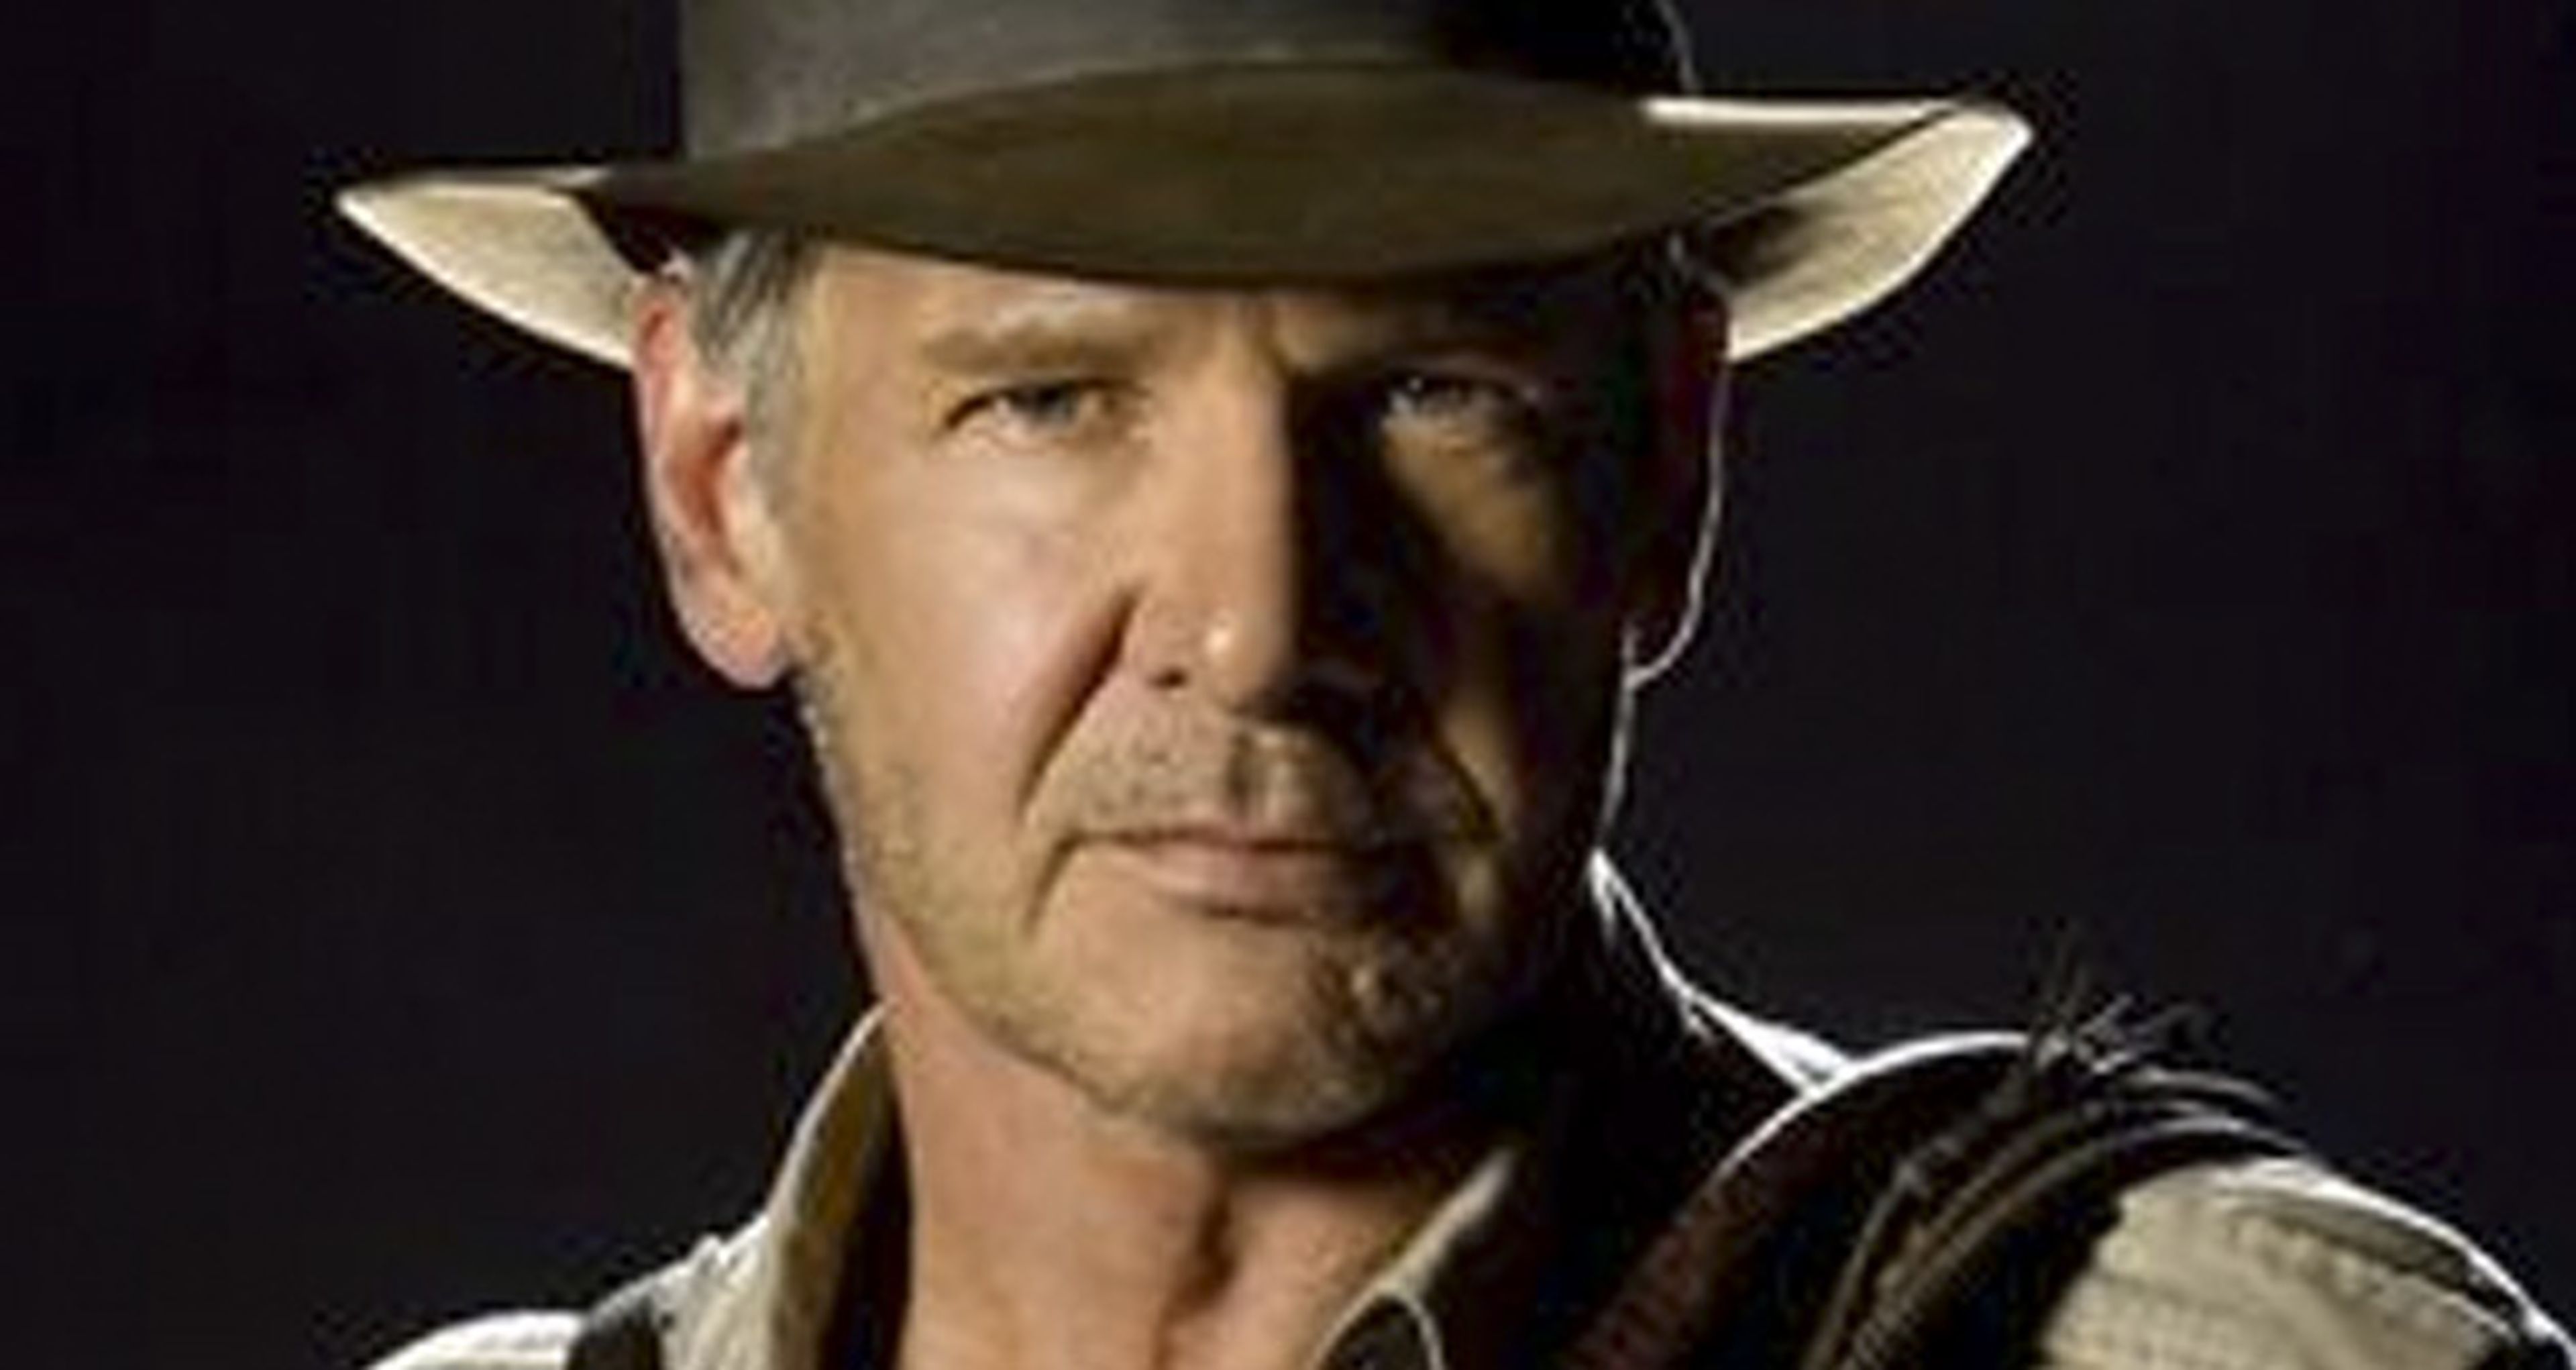 Indiana Jones 5: Spielberg aclara que nadie sustituirá a Harrison Ford como Indy